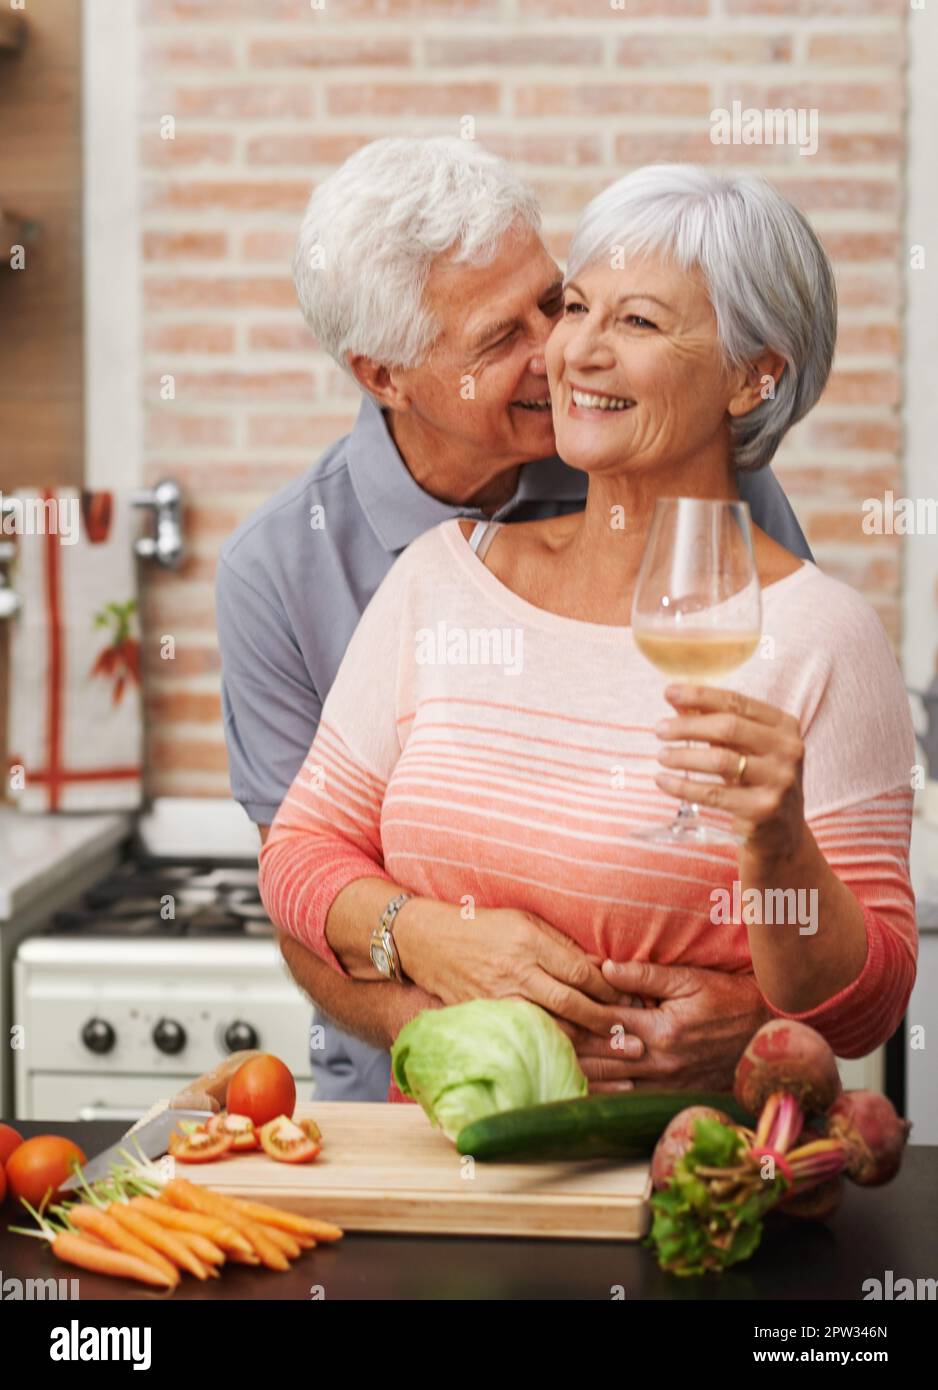 Un baiser rapide. un mari mûr embrassant intimement sa femme Photo Stock -  Alamy